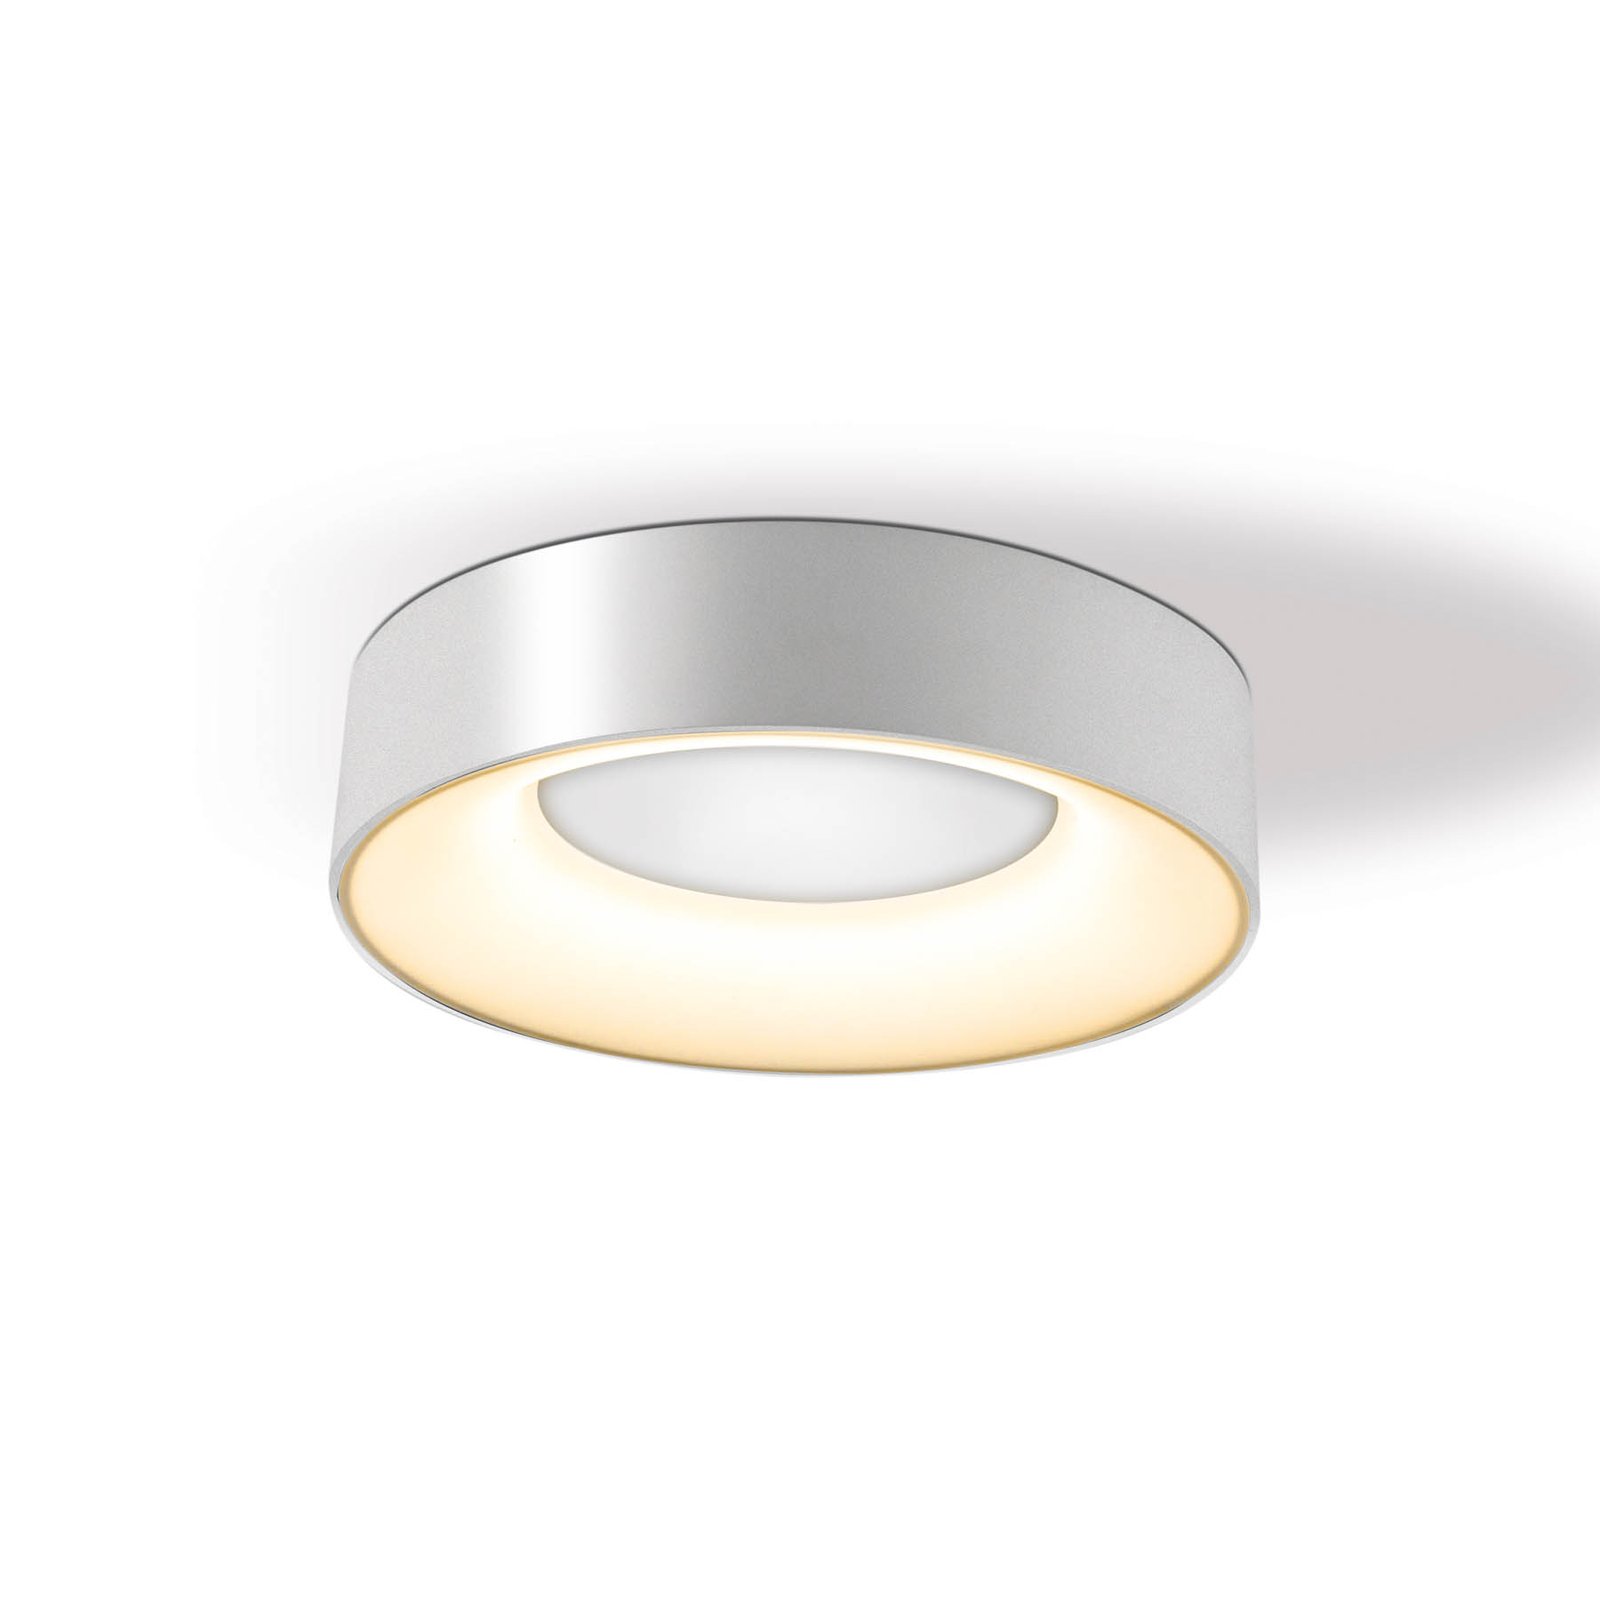 Stropní svítidlo Sauro LED, Ø 30 cm, stříbrná